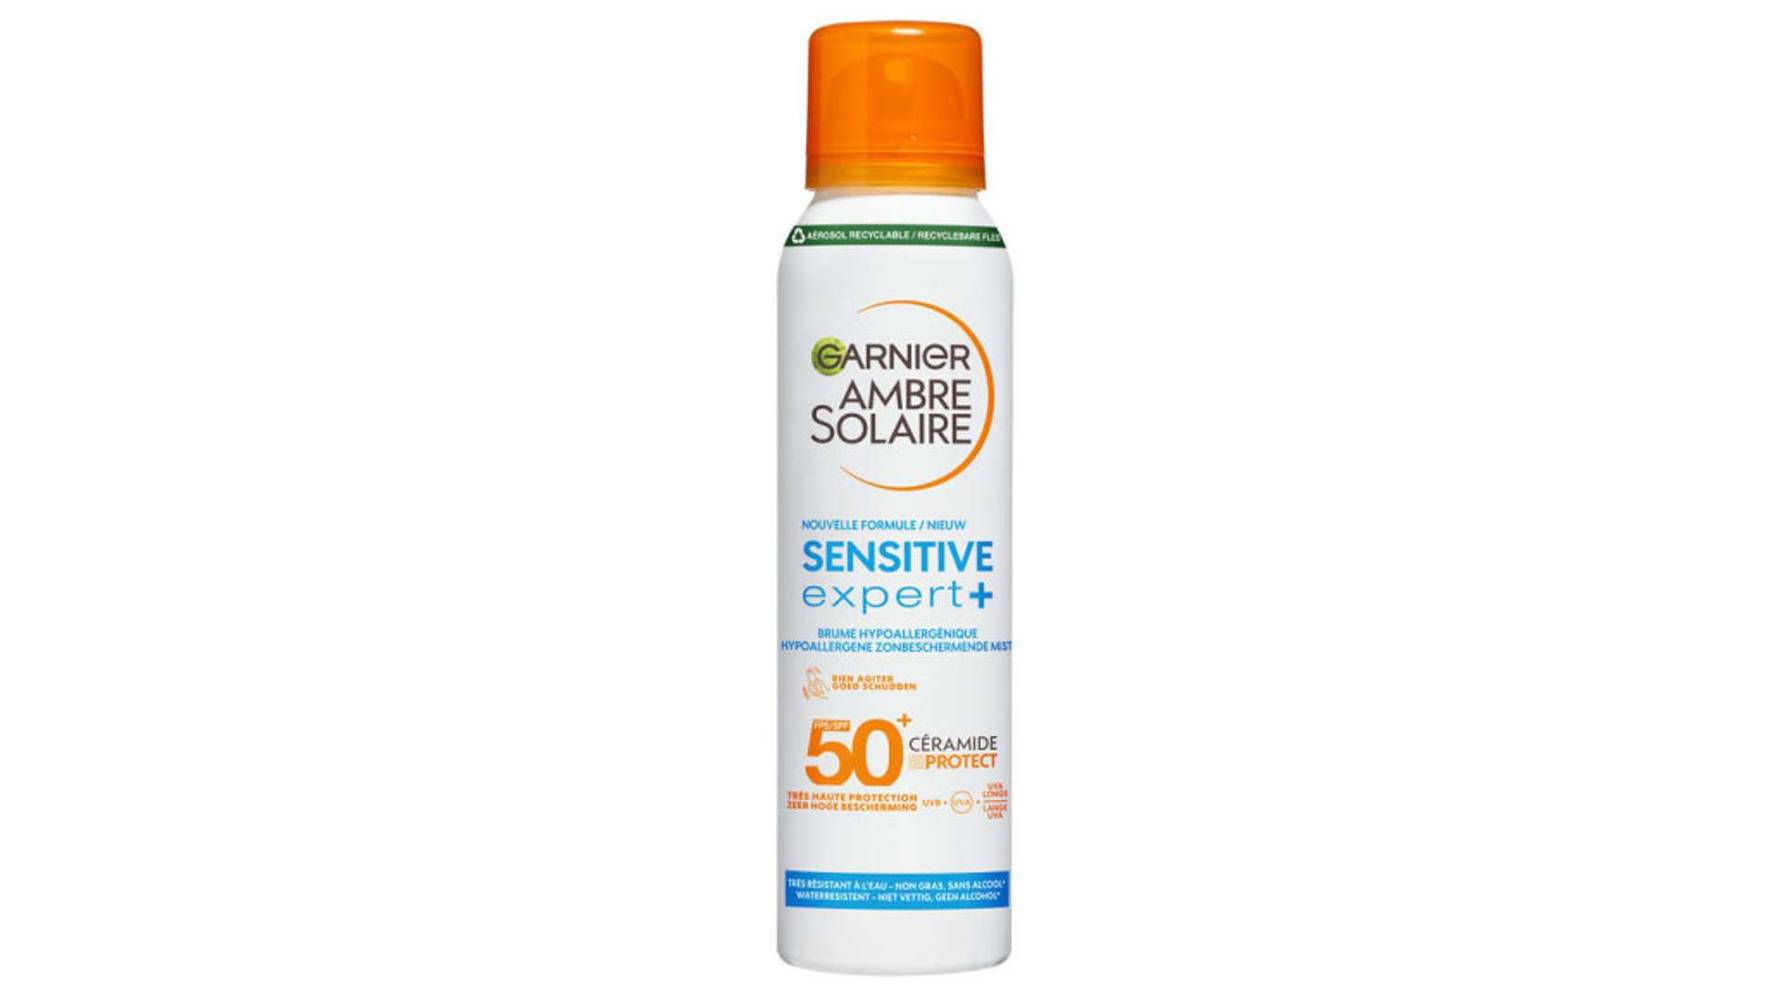 Garnier - Protection solaire brume hypoallergénique spf50+ sensitive expert + ambre solaire